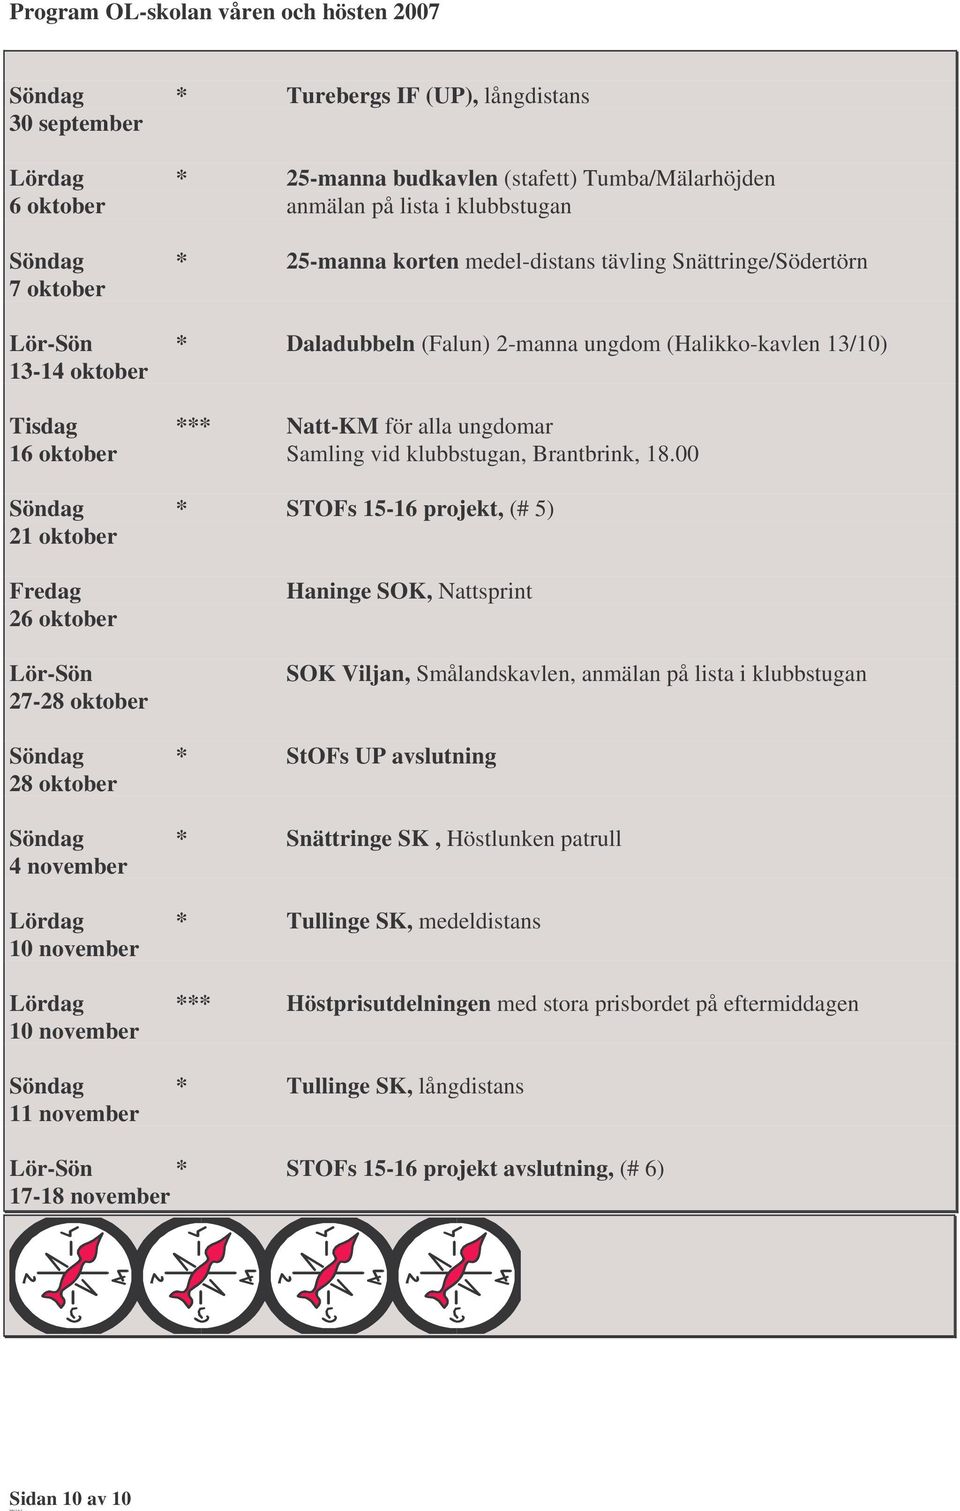 00 * STOFs 15-16 projekt, (# 5) 21 oktober Fredag 26 oktober Lör-Sön 27-28 oktober Haninge SOK, Nattsprint SOK Viljan, Smålandskavlen, anmälan på lista i klubbstugan * StOFs UP avslutning 28 oktober